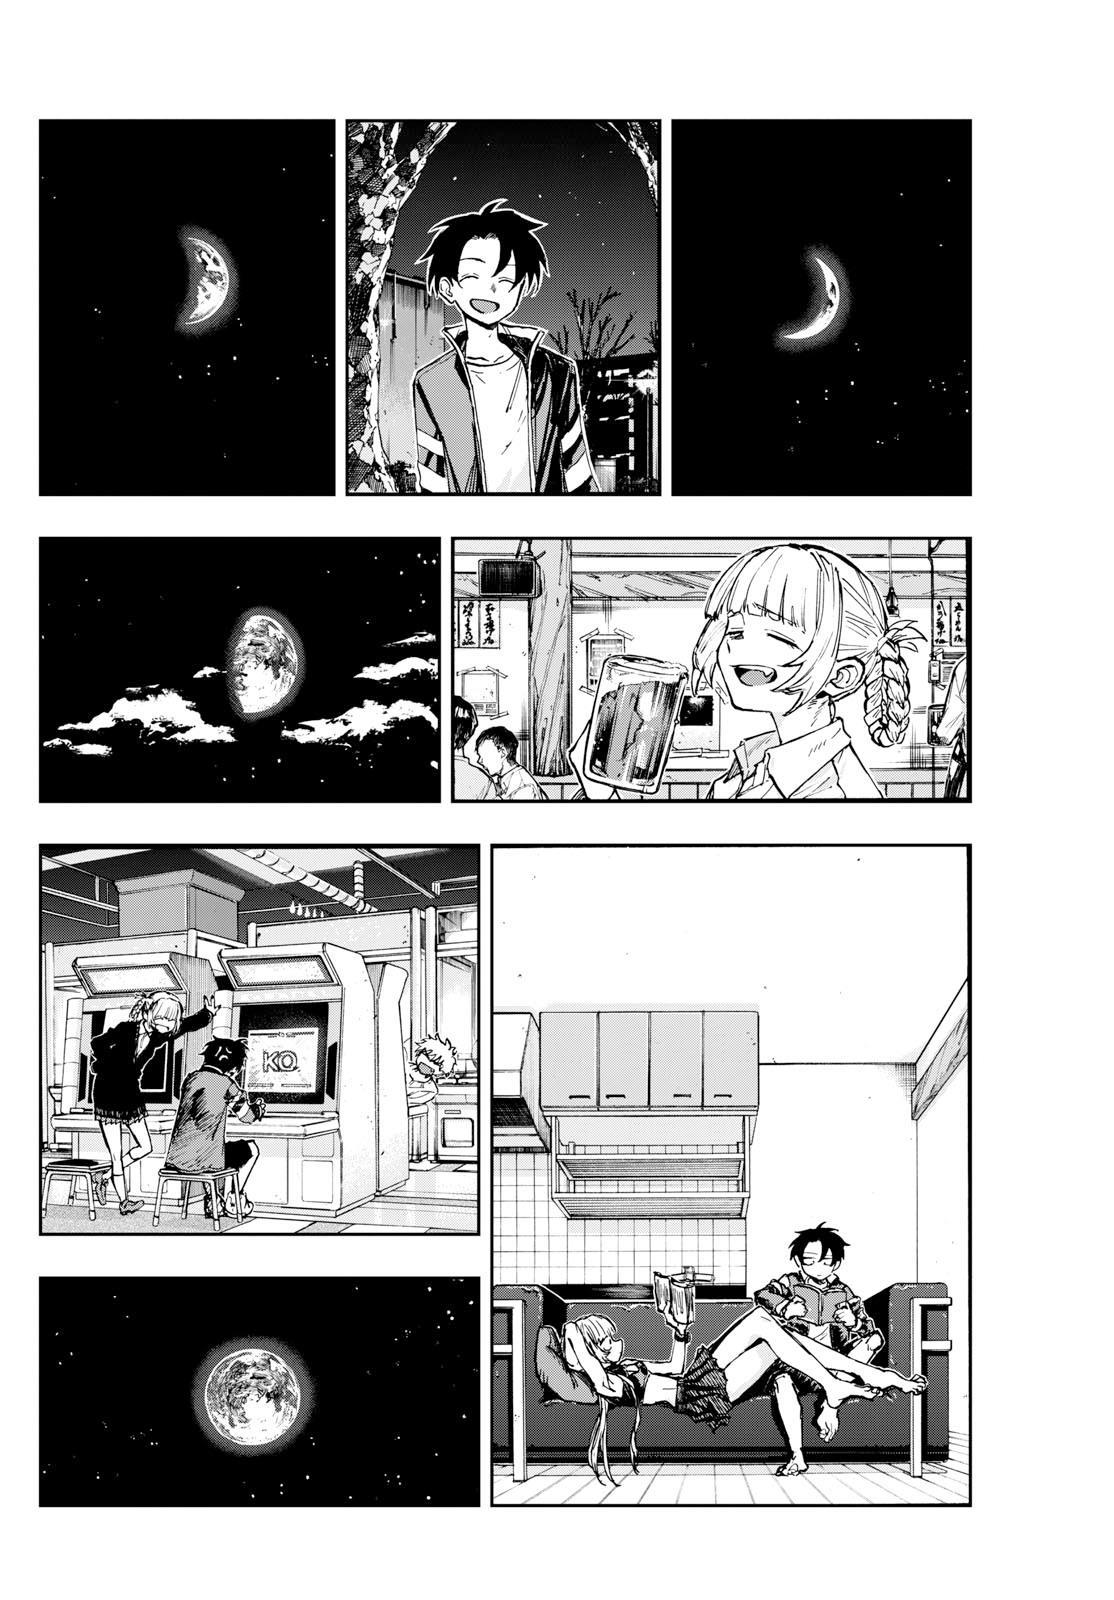 Yofukashi no Uta Vol.9 Ch.183 Page 2 - Mangago